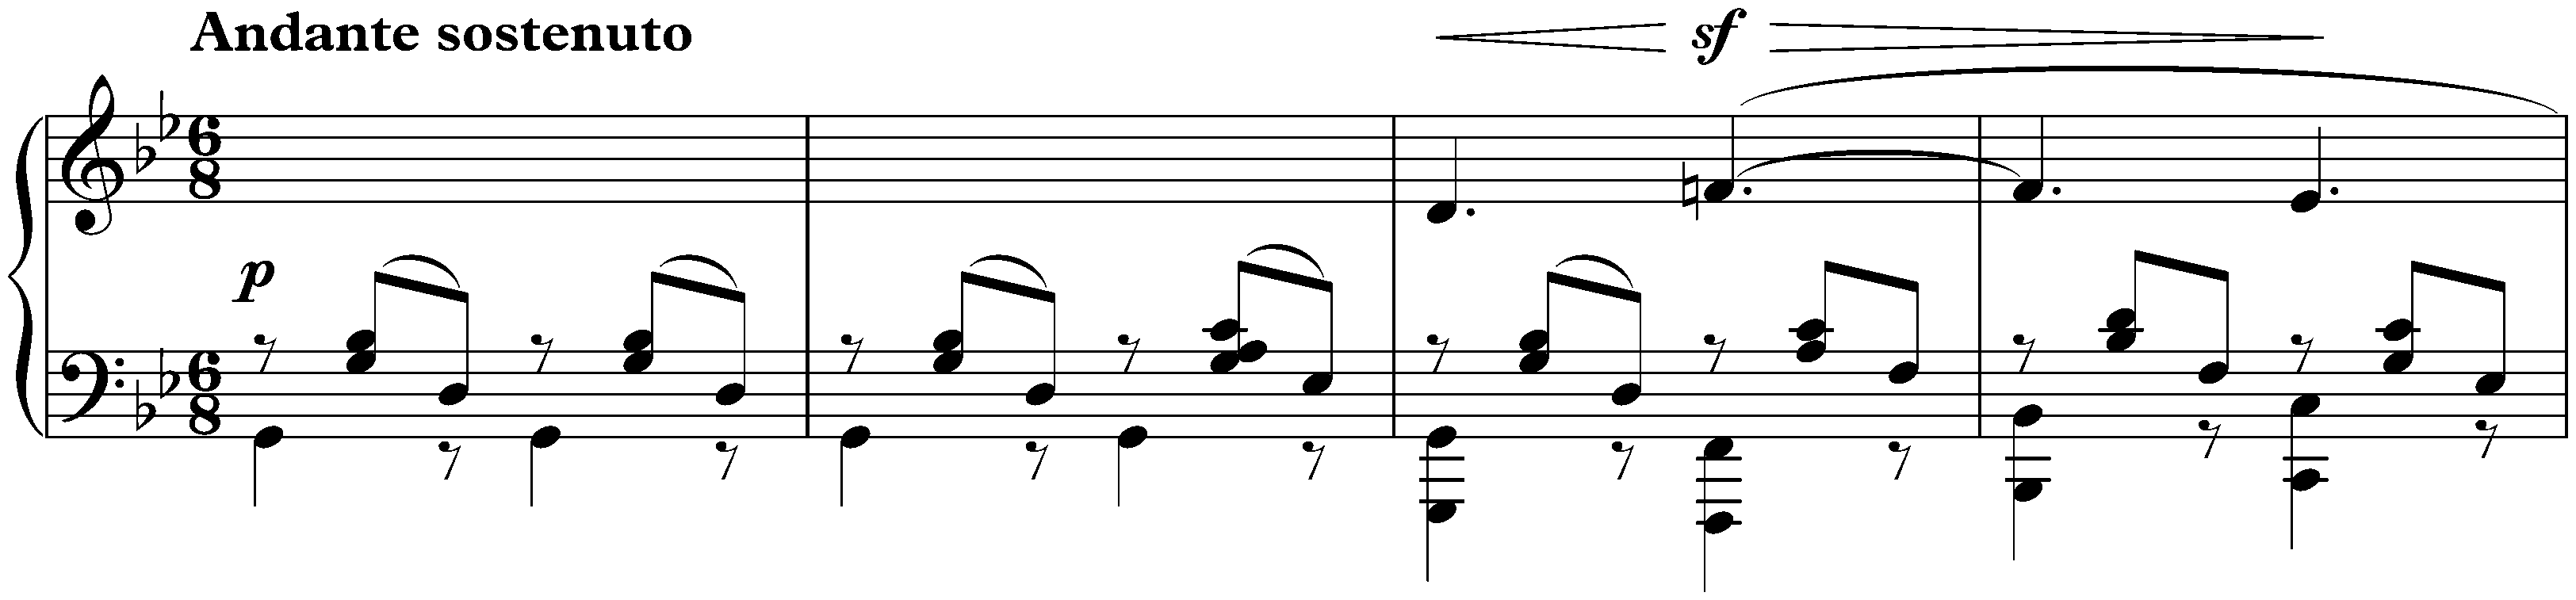 Lieder ohne Worte, Book 1, op. 19b; 6. G minor (Venetianisches Gondellied)